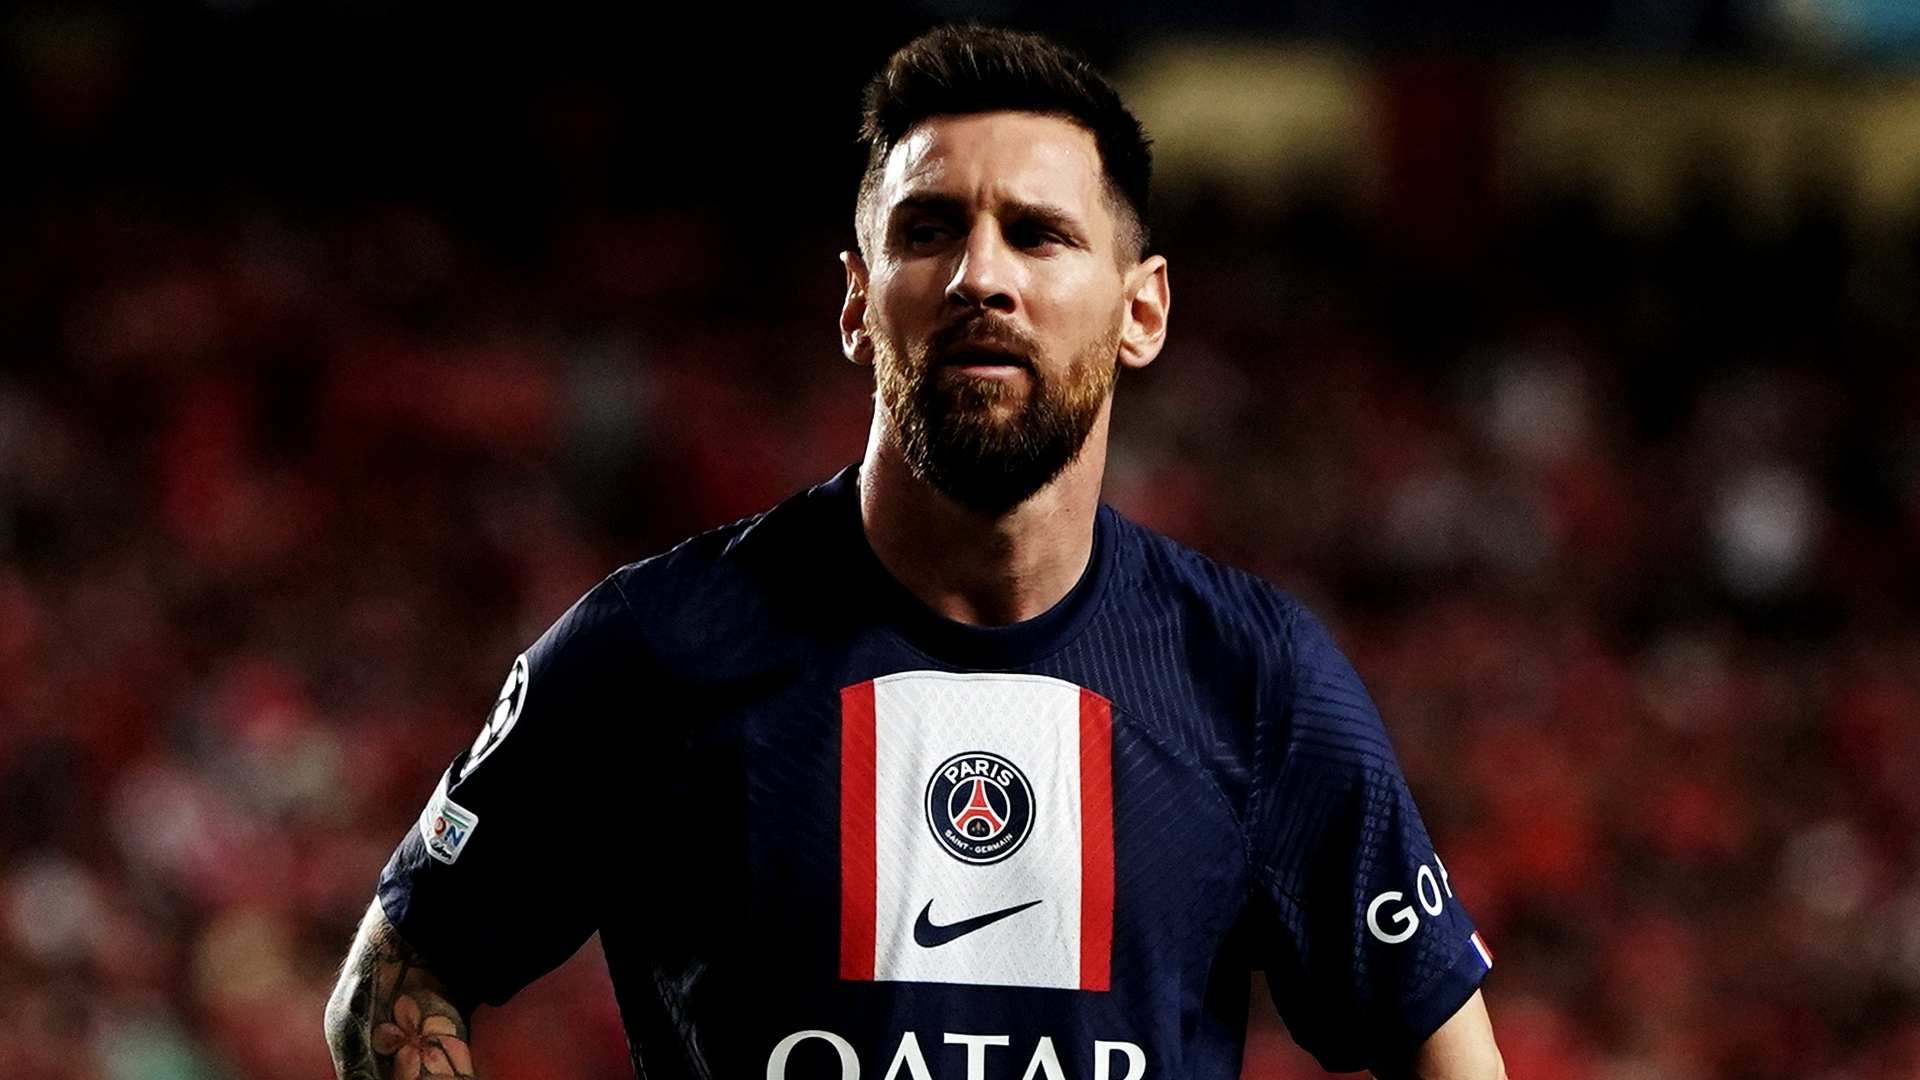 20221005-Ligue1-PSG-Lionel-Messi